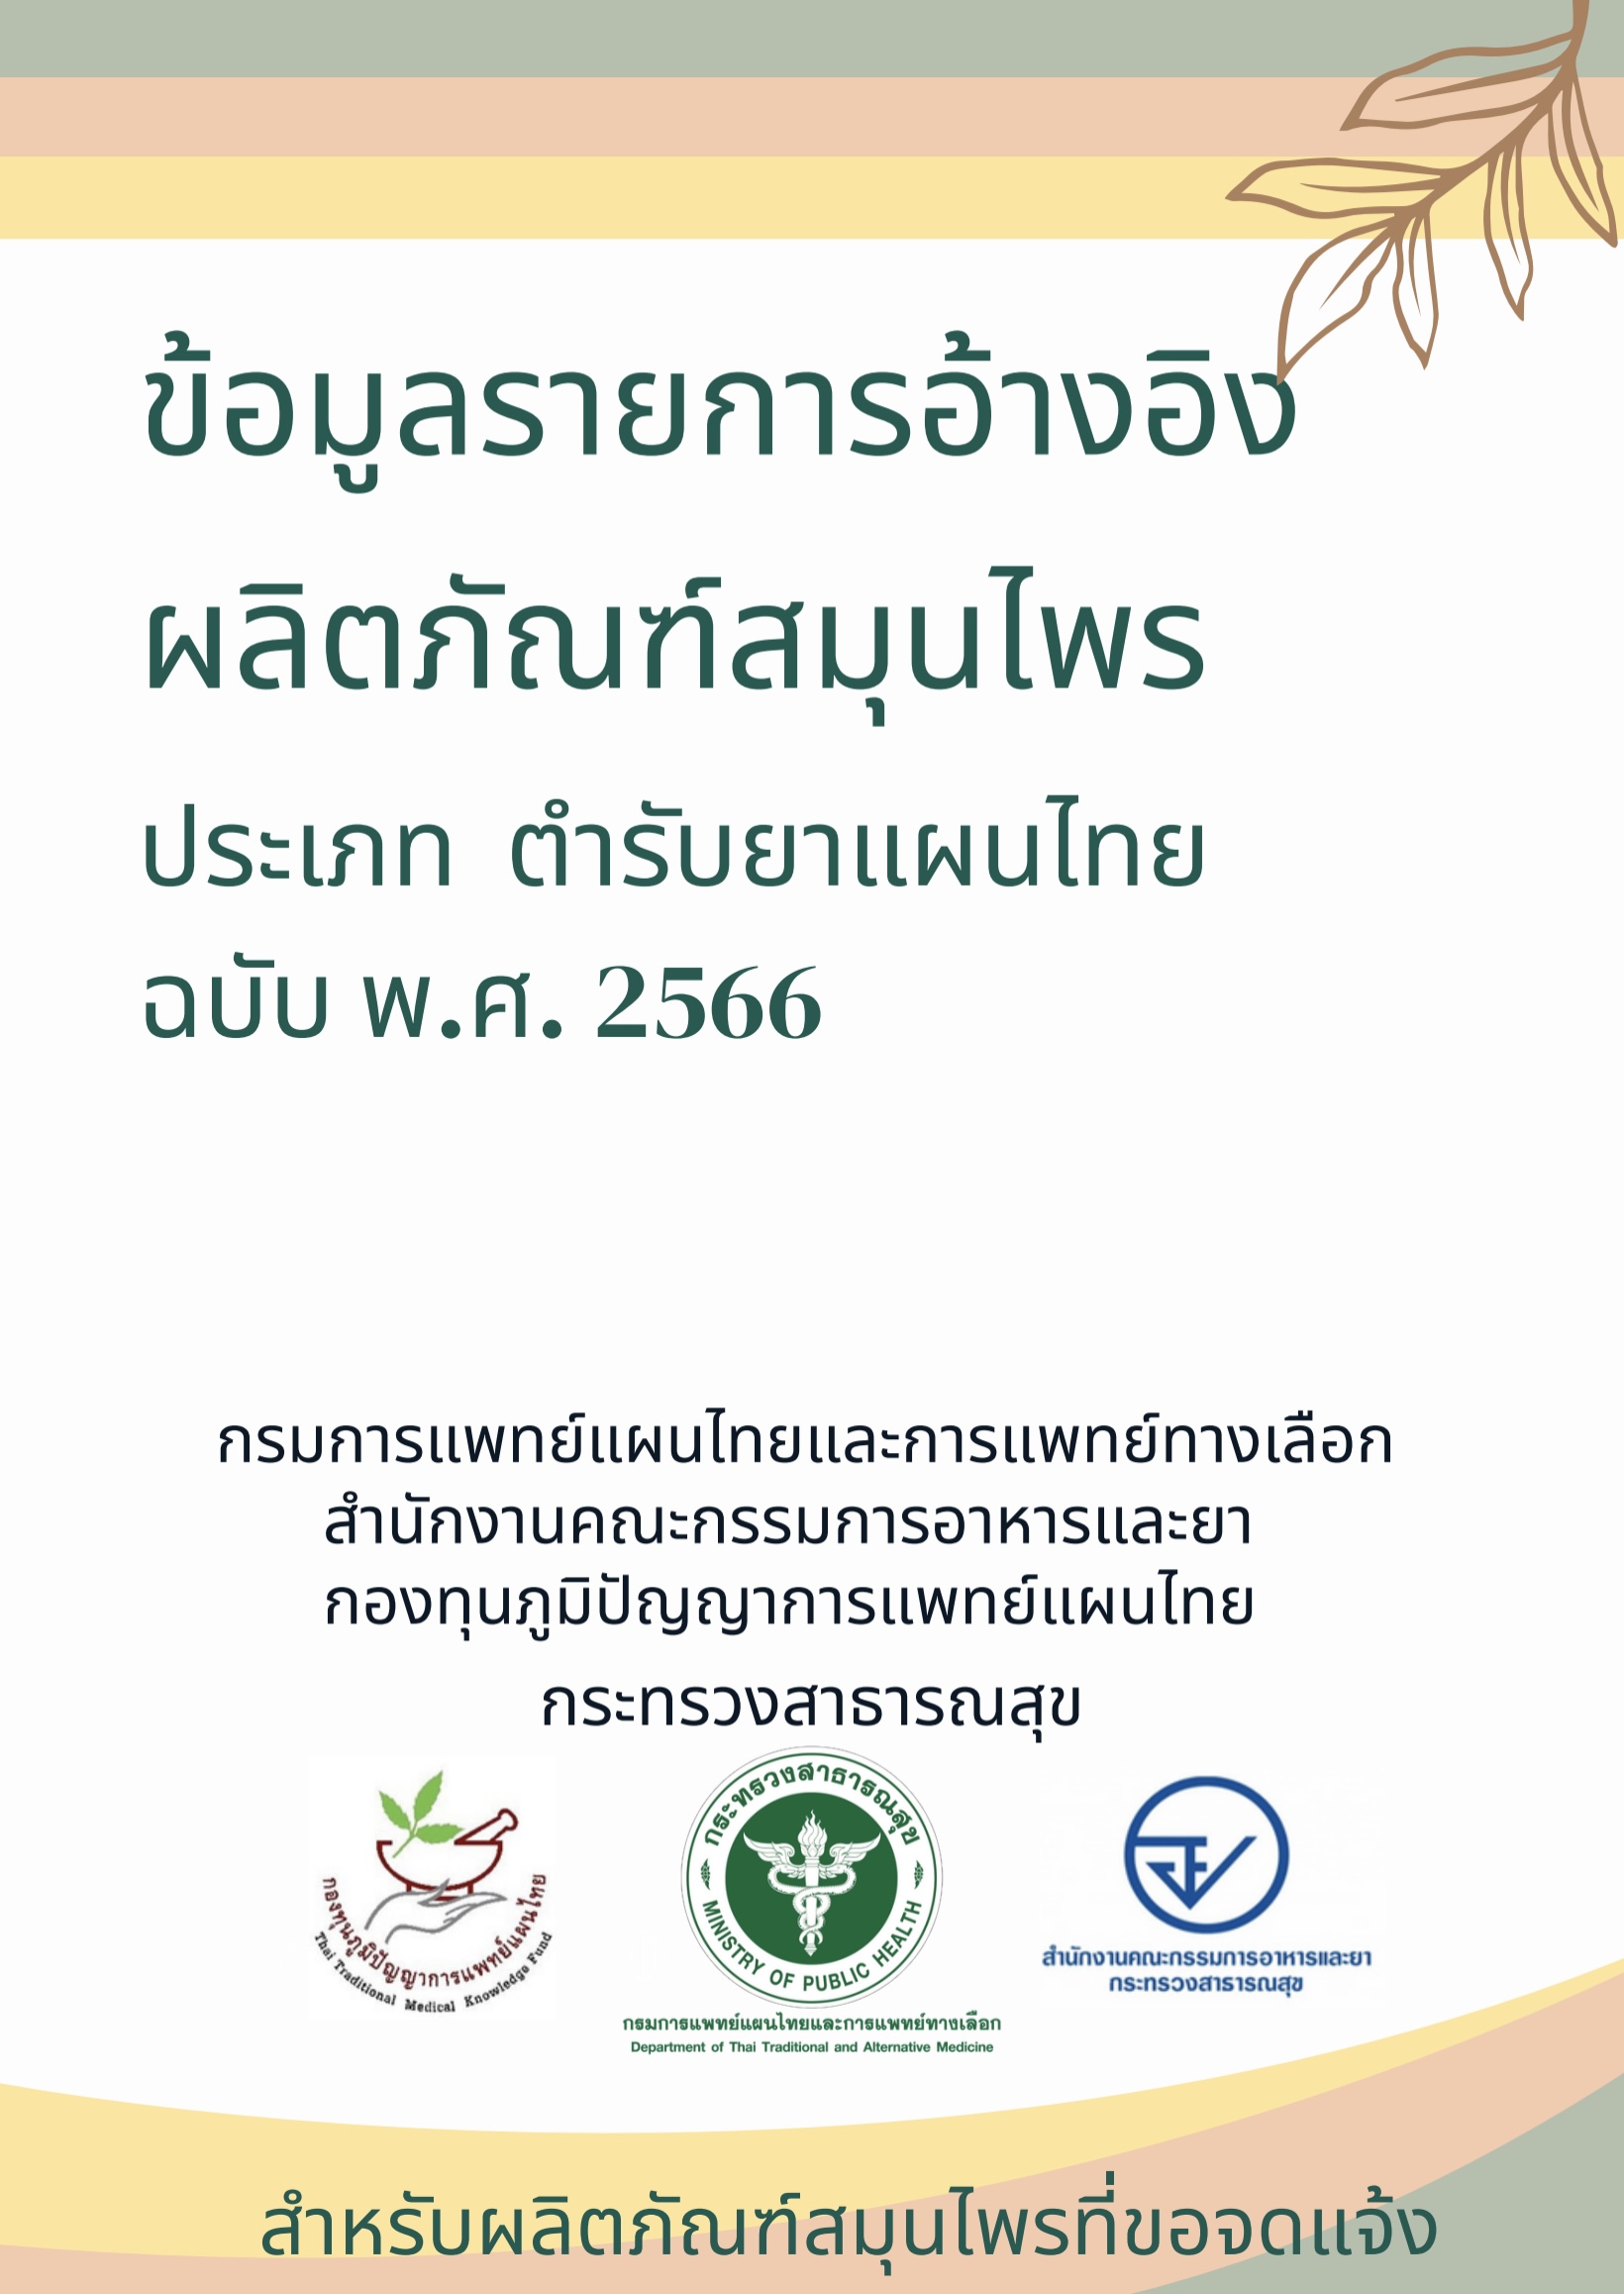 ข้อมูลรายการอ้างอิงผลิตภัณฑ์สมุนไพร ประเภท ตำรับยาแผนไทย ฉบับ พ.ศ.2566